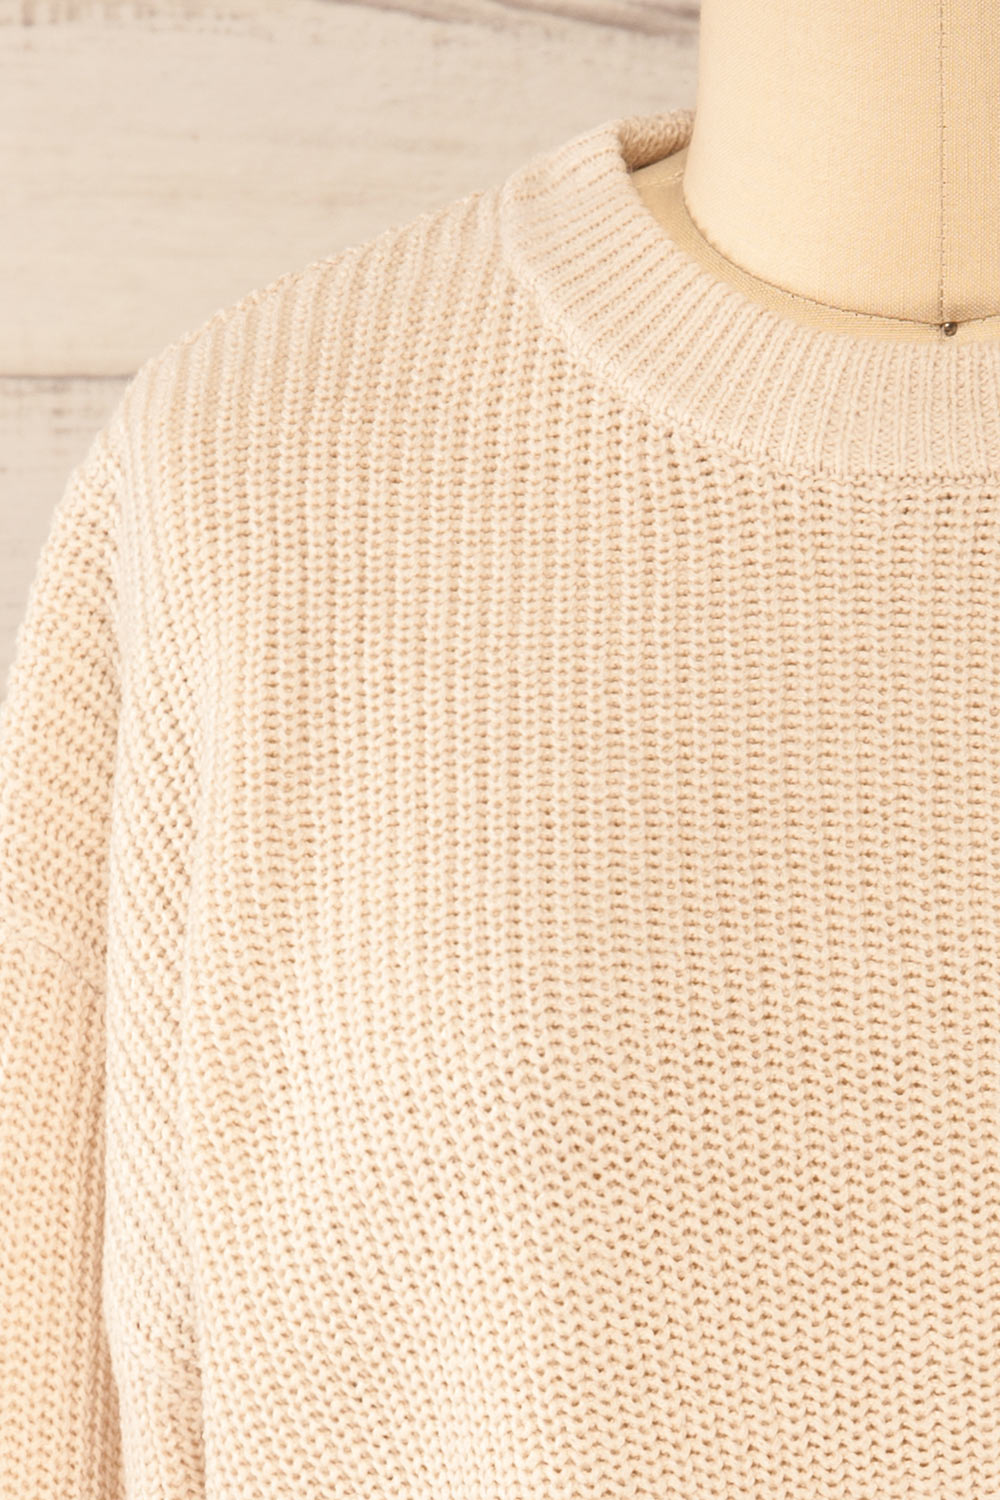 Colorado Beige Cropped Knit Sweater | La petite garçonne front close-up